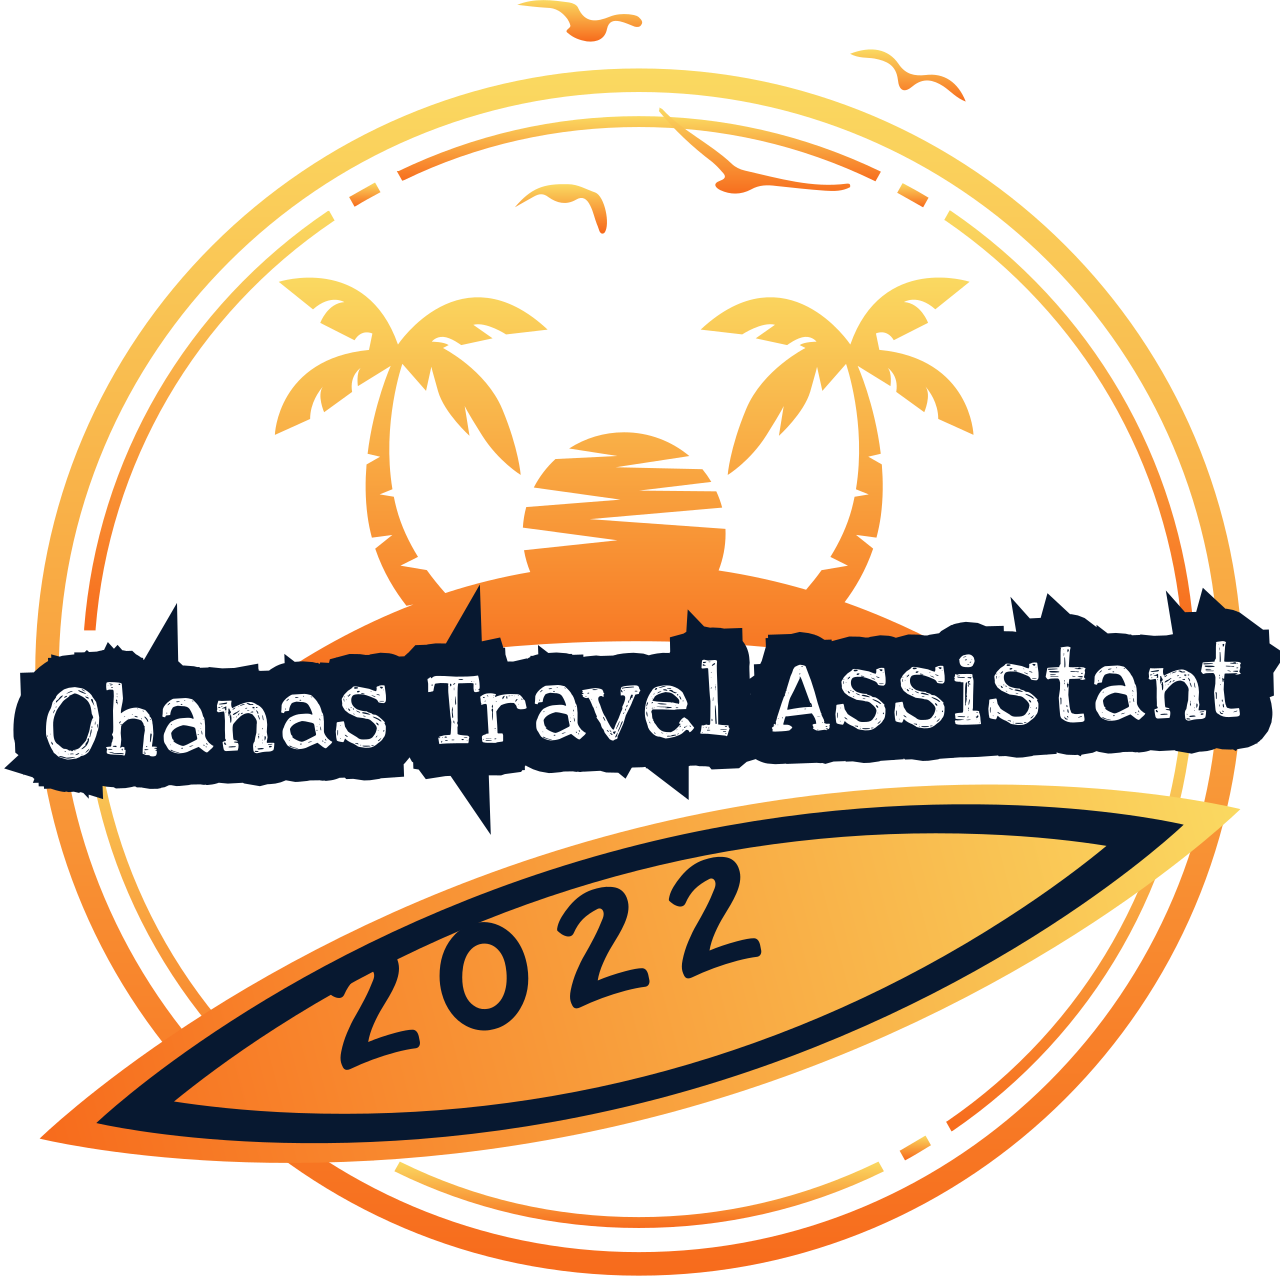 Ohanas Travels's web page